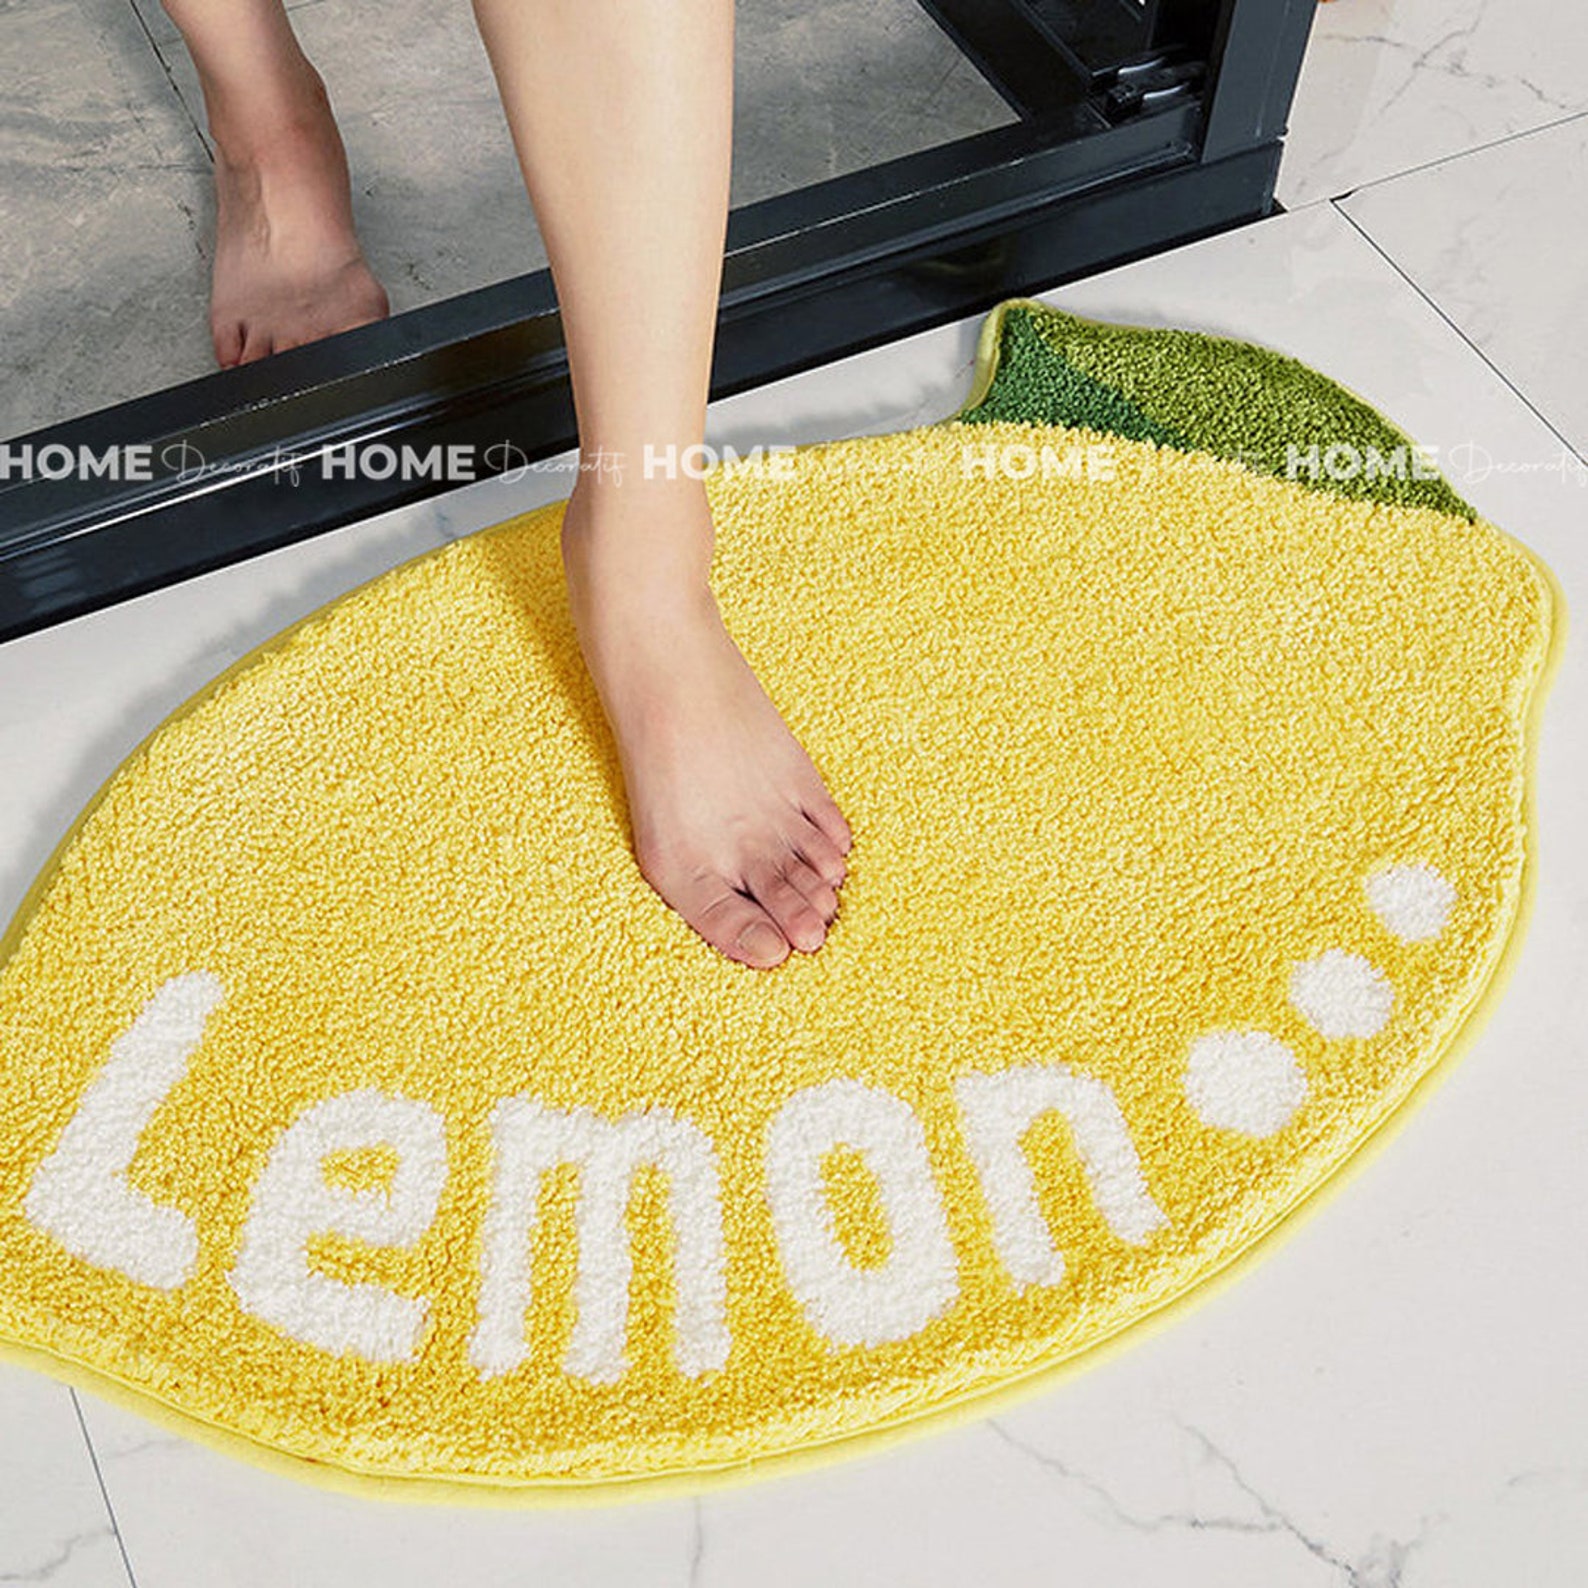 Lemon bath mat | Etsy